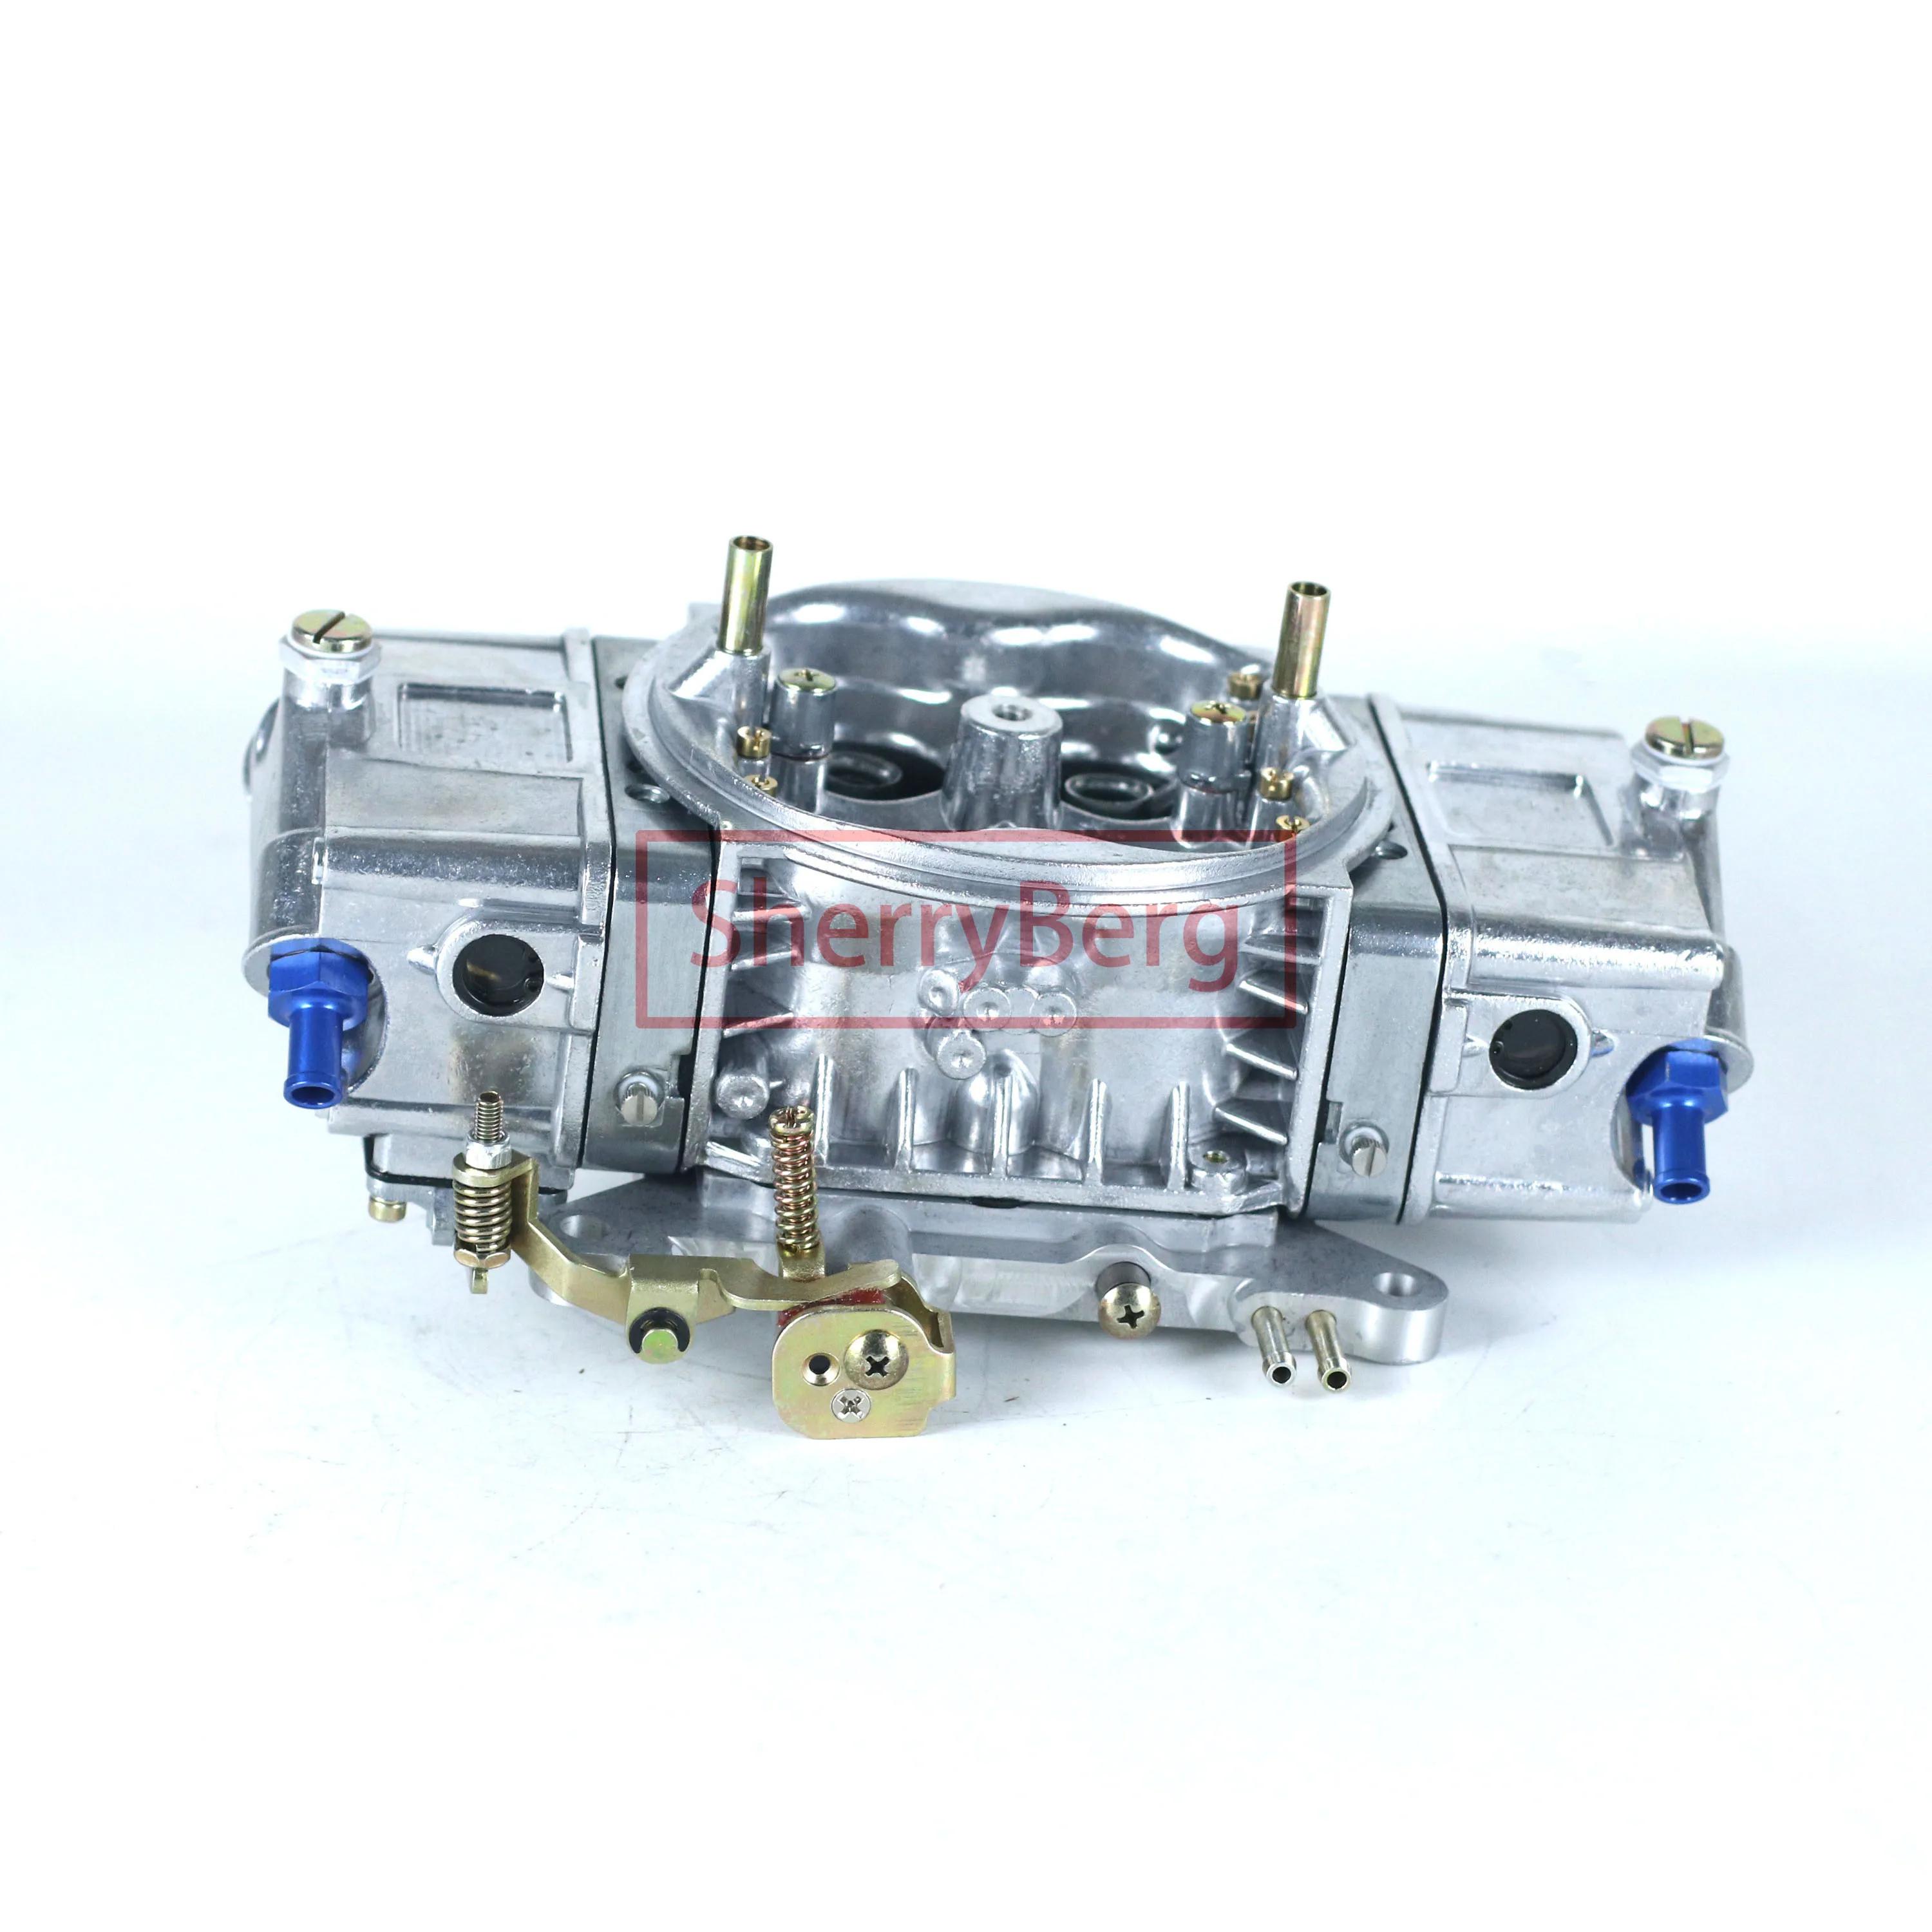  귣 Carburador Carburettor Carb Repp, HOLLEY 850 CFM Billet Pro ī극Ÿ,   ġ 